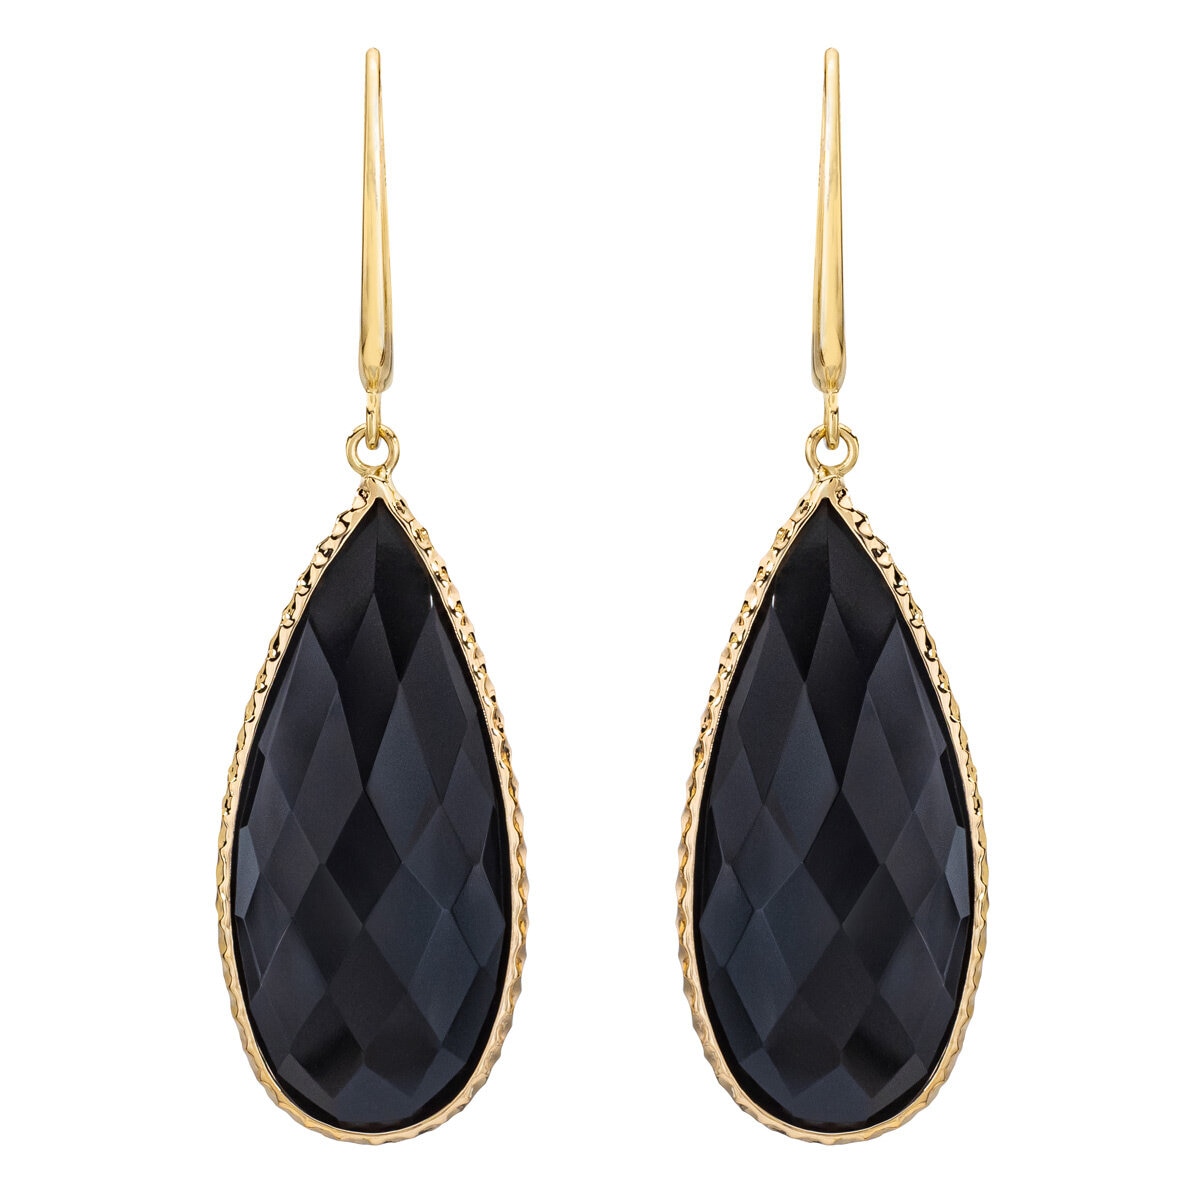 14KT Yellow Gold Pear Shape Black Onyx Earrings | Costco ...